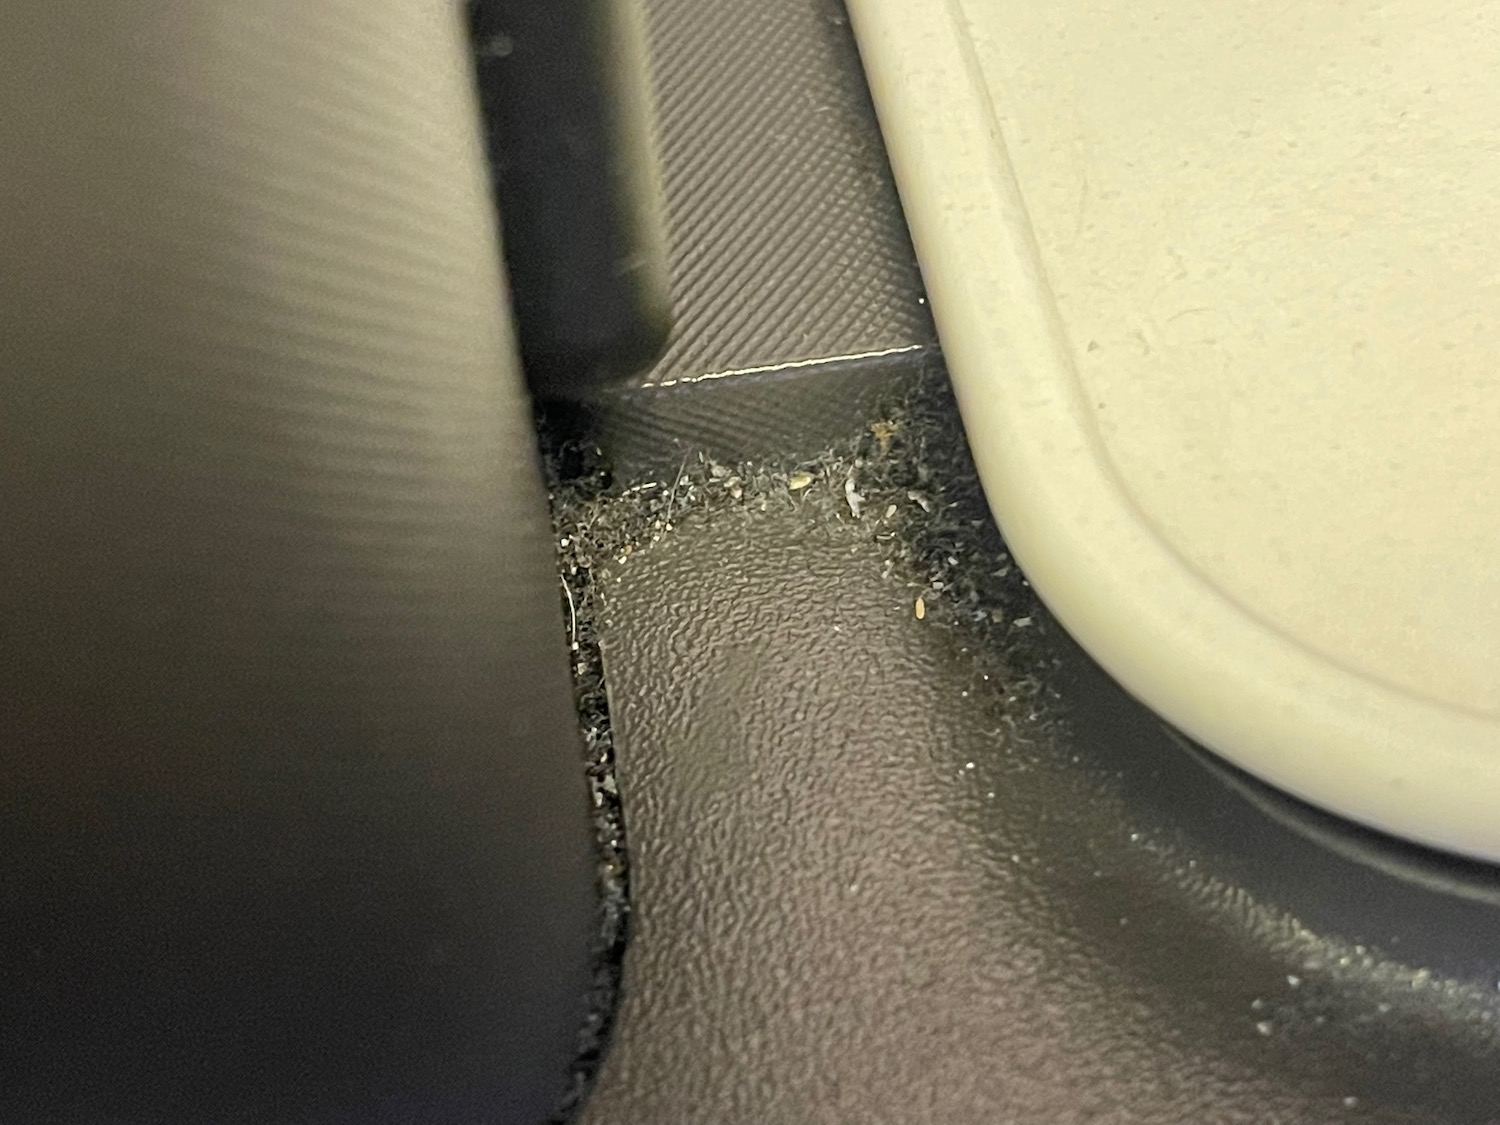 a close up of a car floor